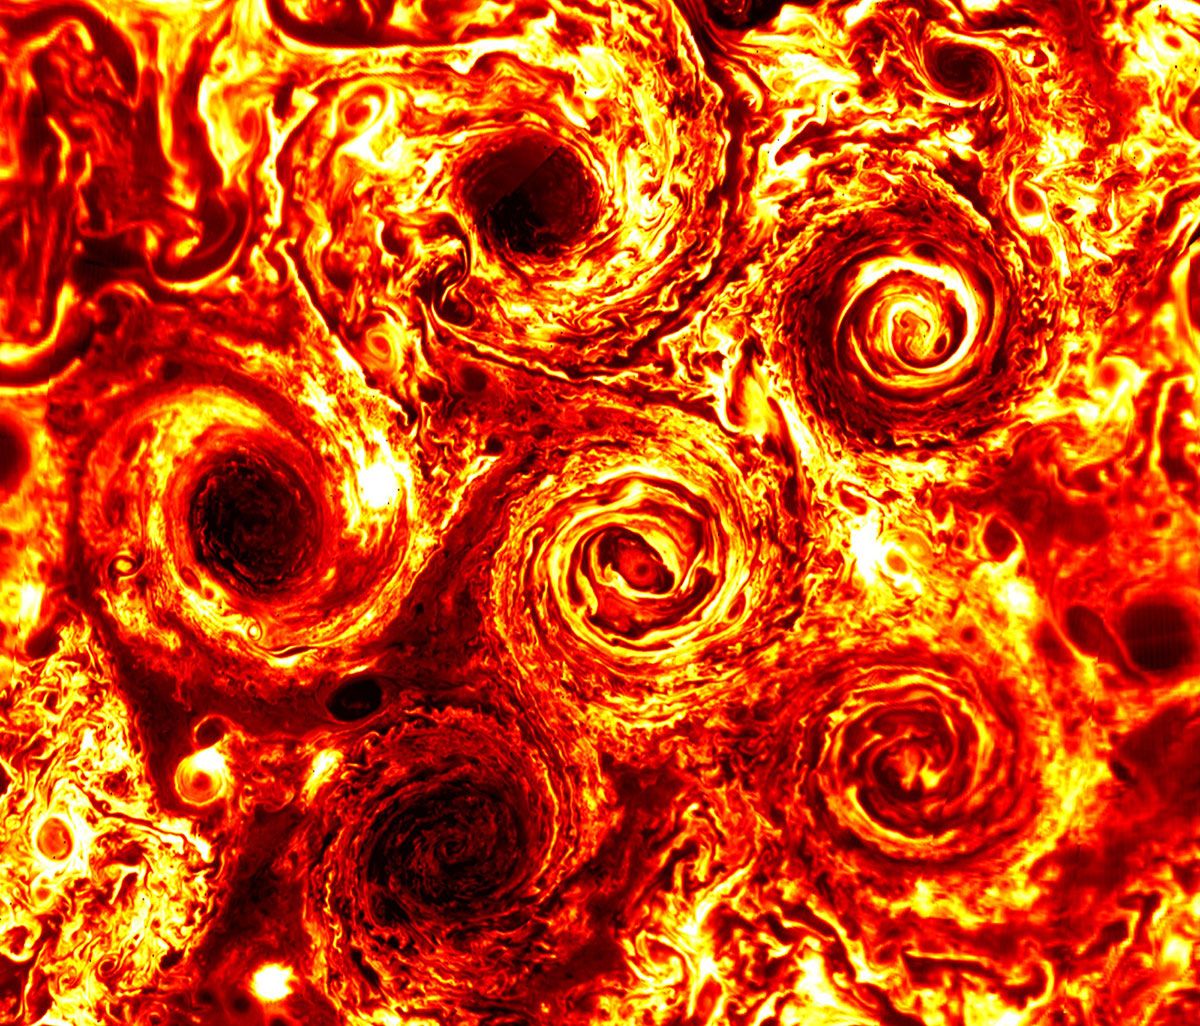 Infrared image of Jupiter